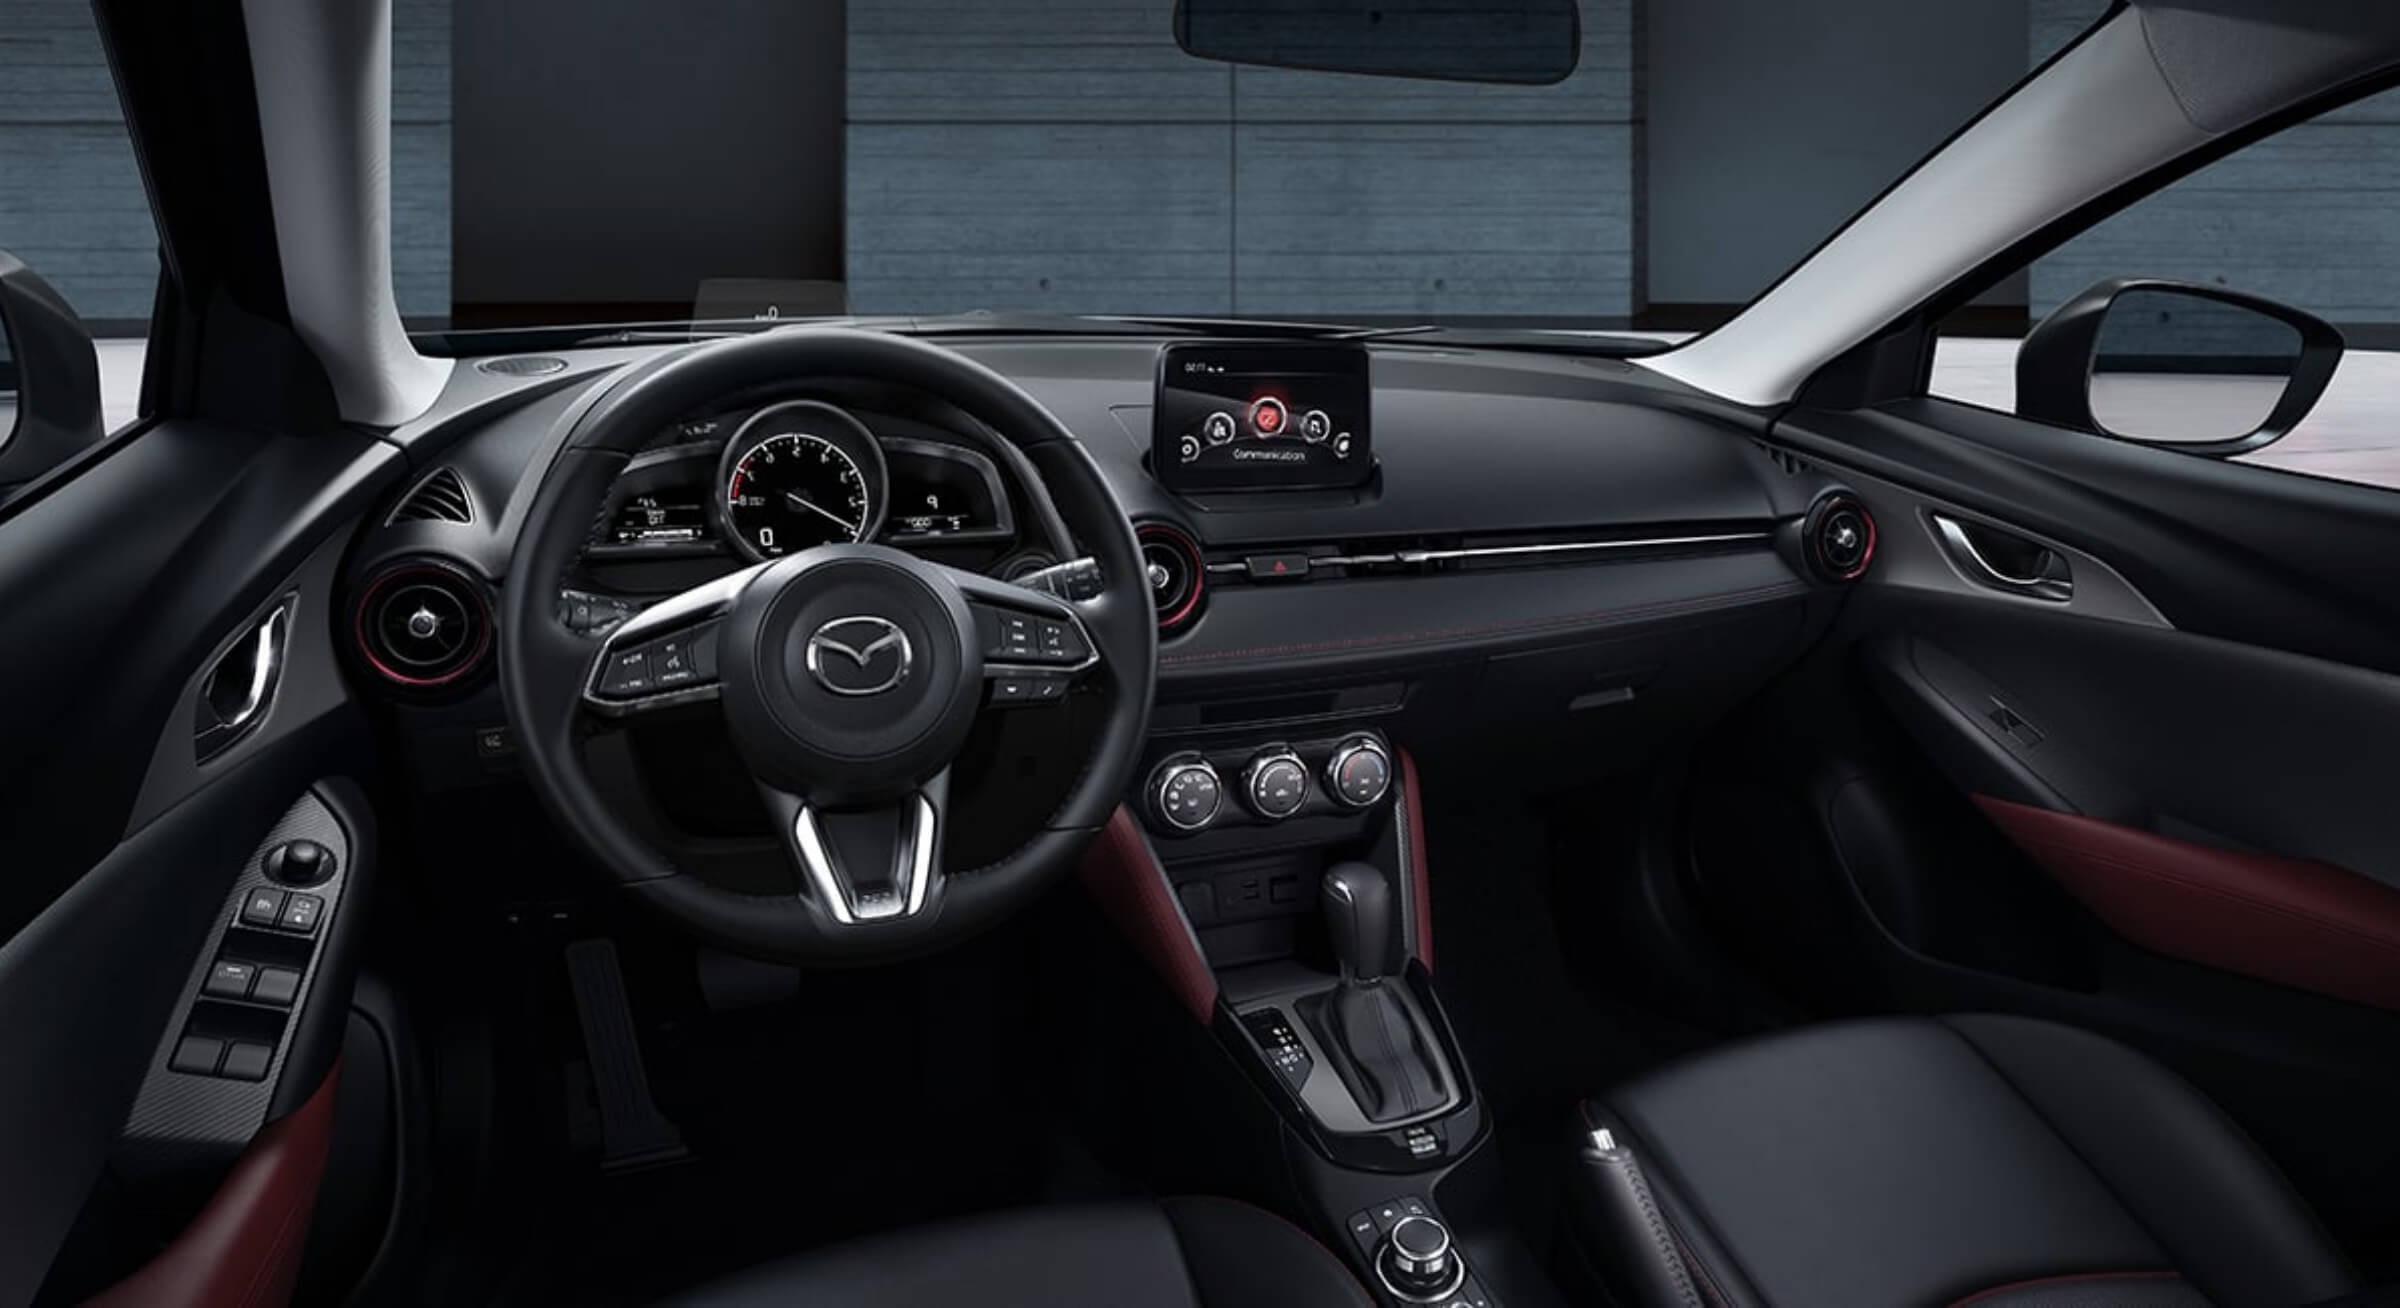 Tầm giá 700 triệu đồng: Chọn Mazda 3 hay Mazda CX3? - 4